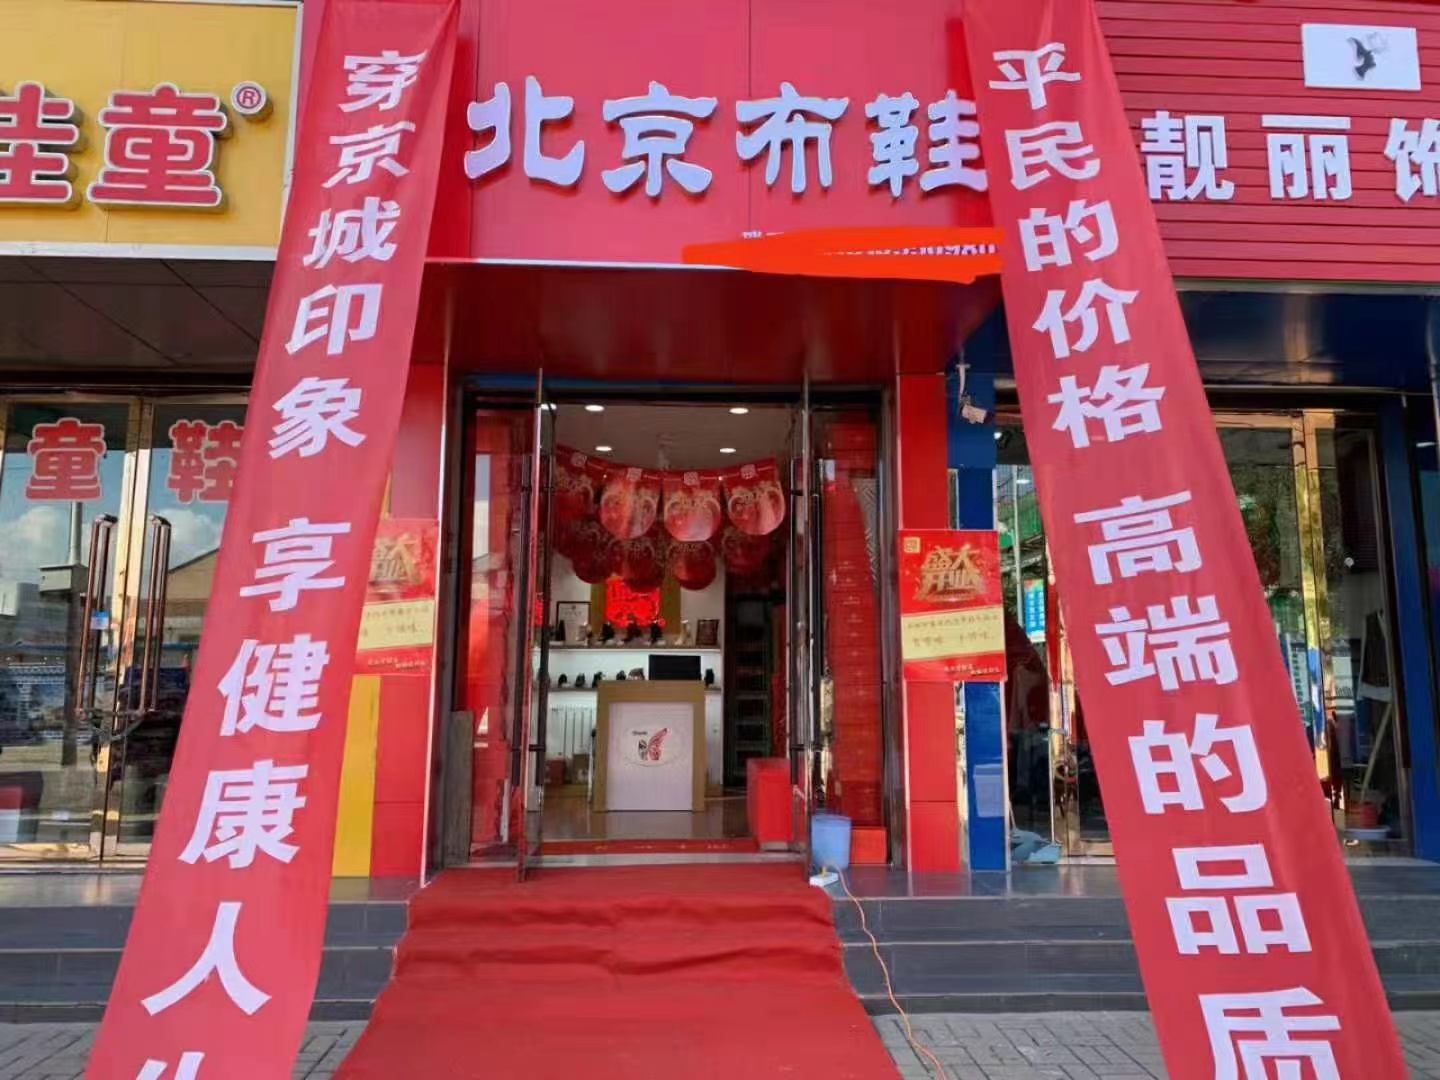 贺：京城印象老北京布鞋加盟店四川黄老板盛大开业！